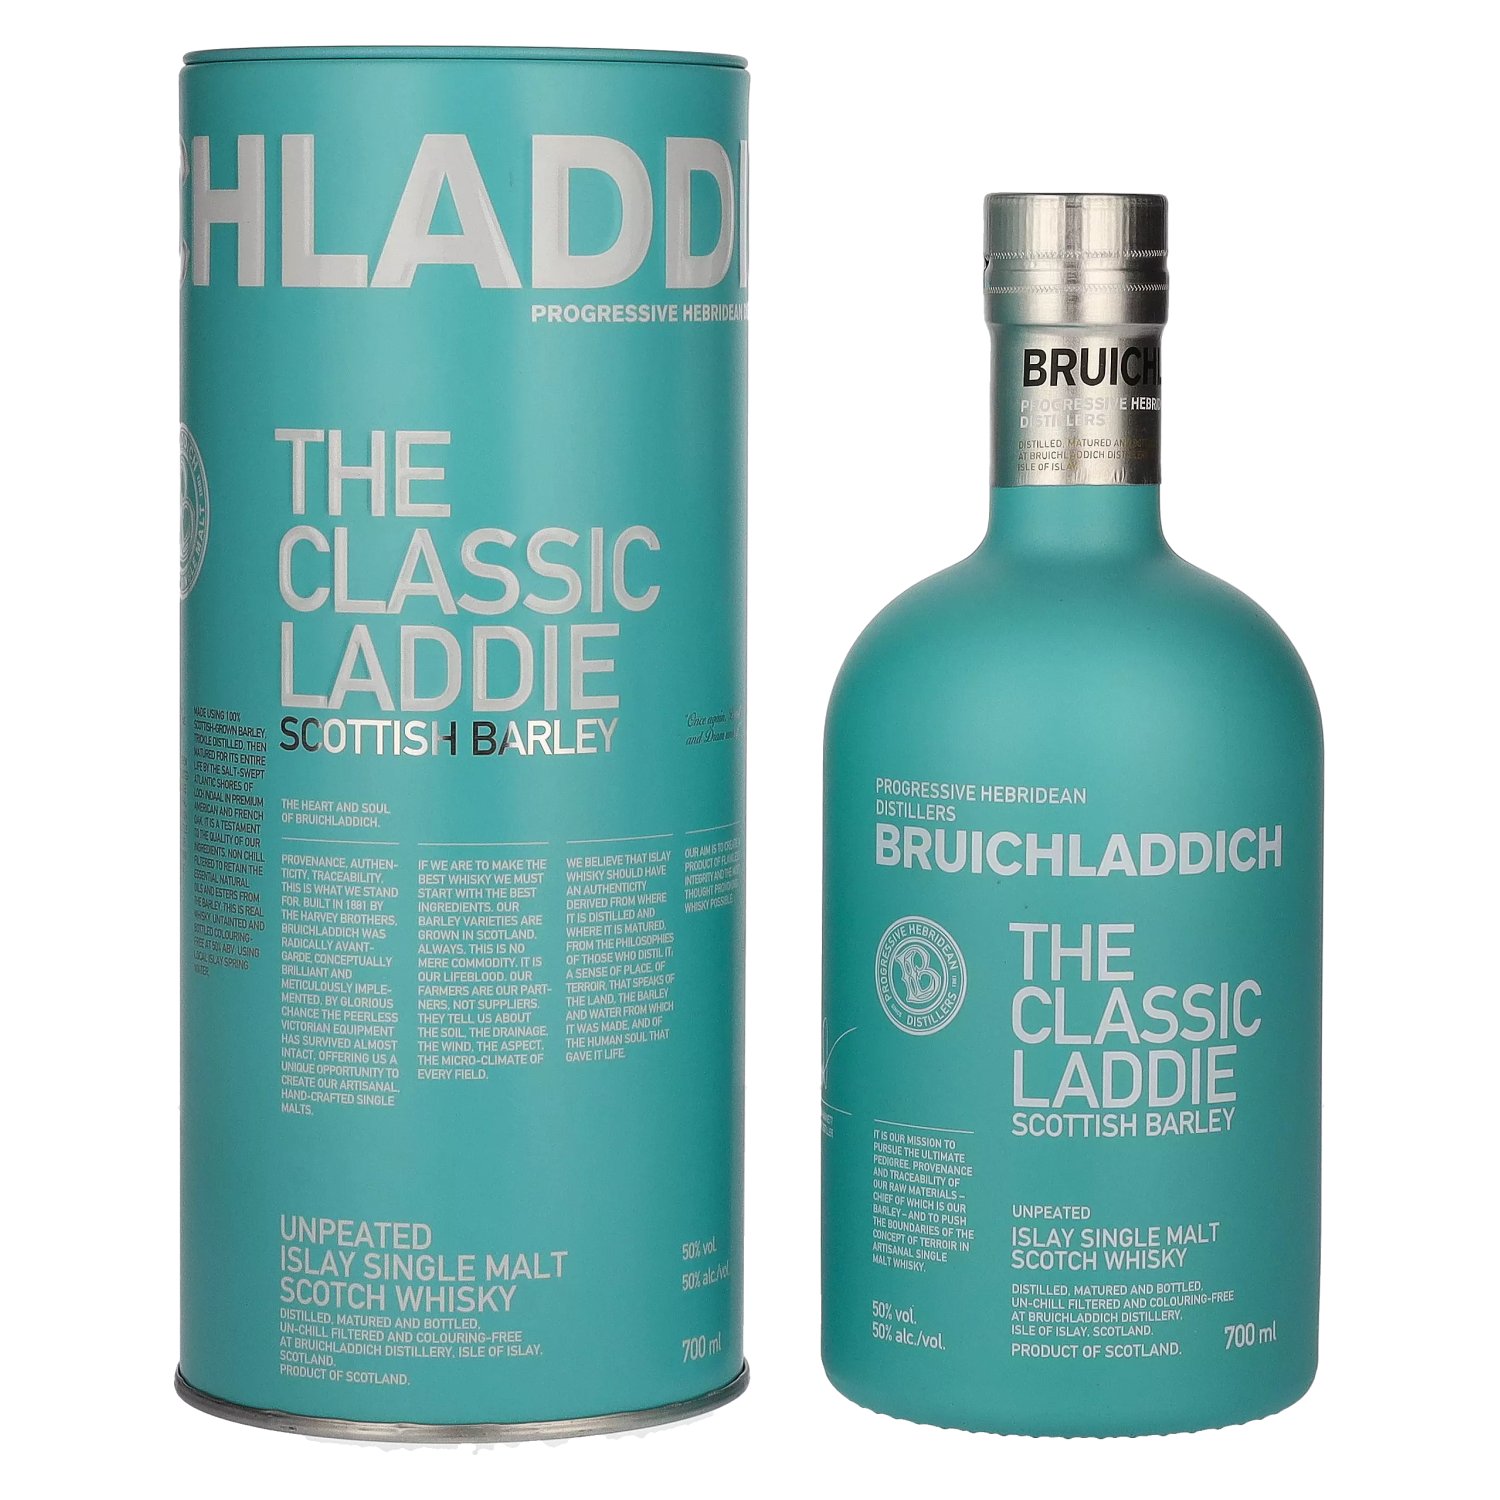 Bruichladdich THE in 50% Vol. LADDIE CLASSIC 0,7l Tinbox Barley Scottish Unpeated Islay Single Malt